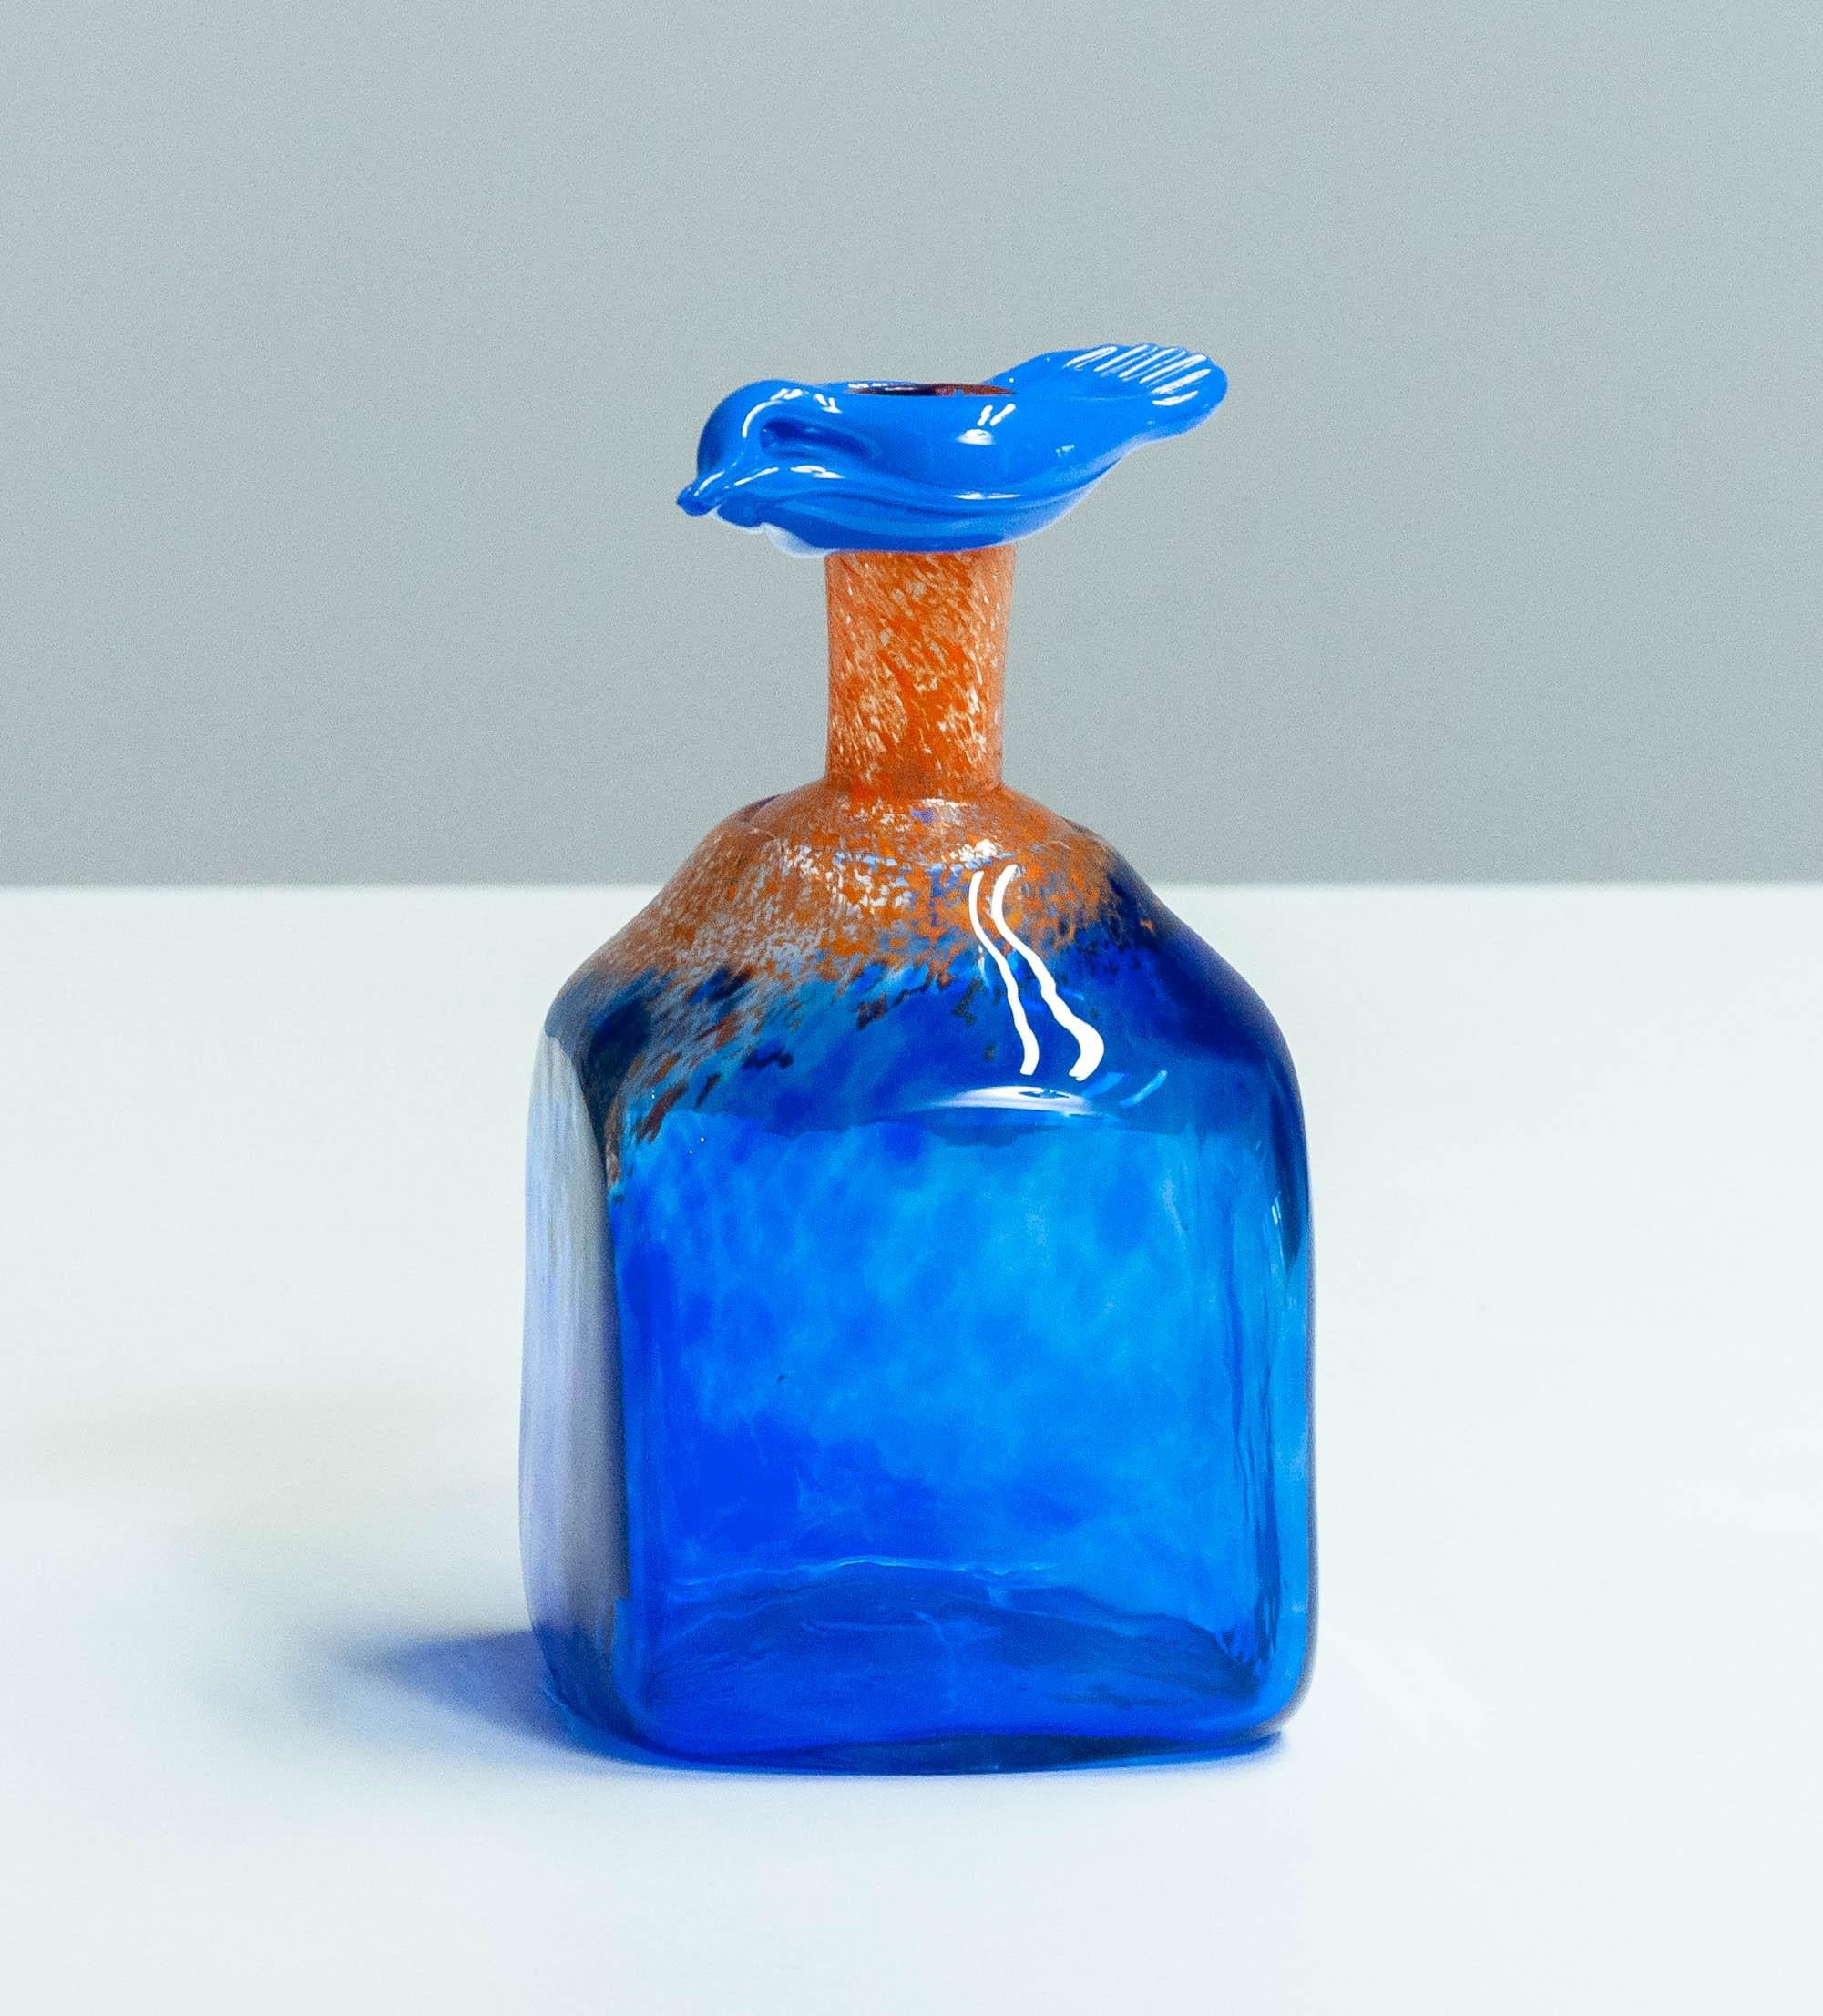 Vase/bouteille absolument magnifique et unique en son genre, réalisé par Staffan Gellerstedt en 1988 au Studio Glashyttan à Ahus en Suède. Ce chef-d'œuvre est daté et signé par l'artiste lui-même.
Un must absolu pour ceux qui collectionnent les